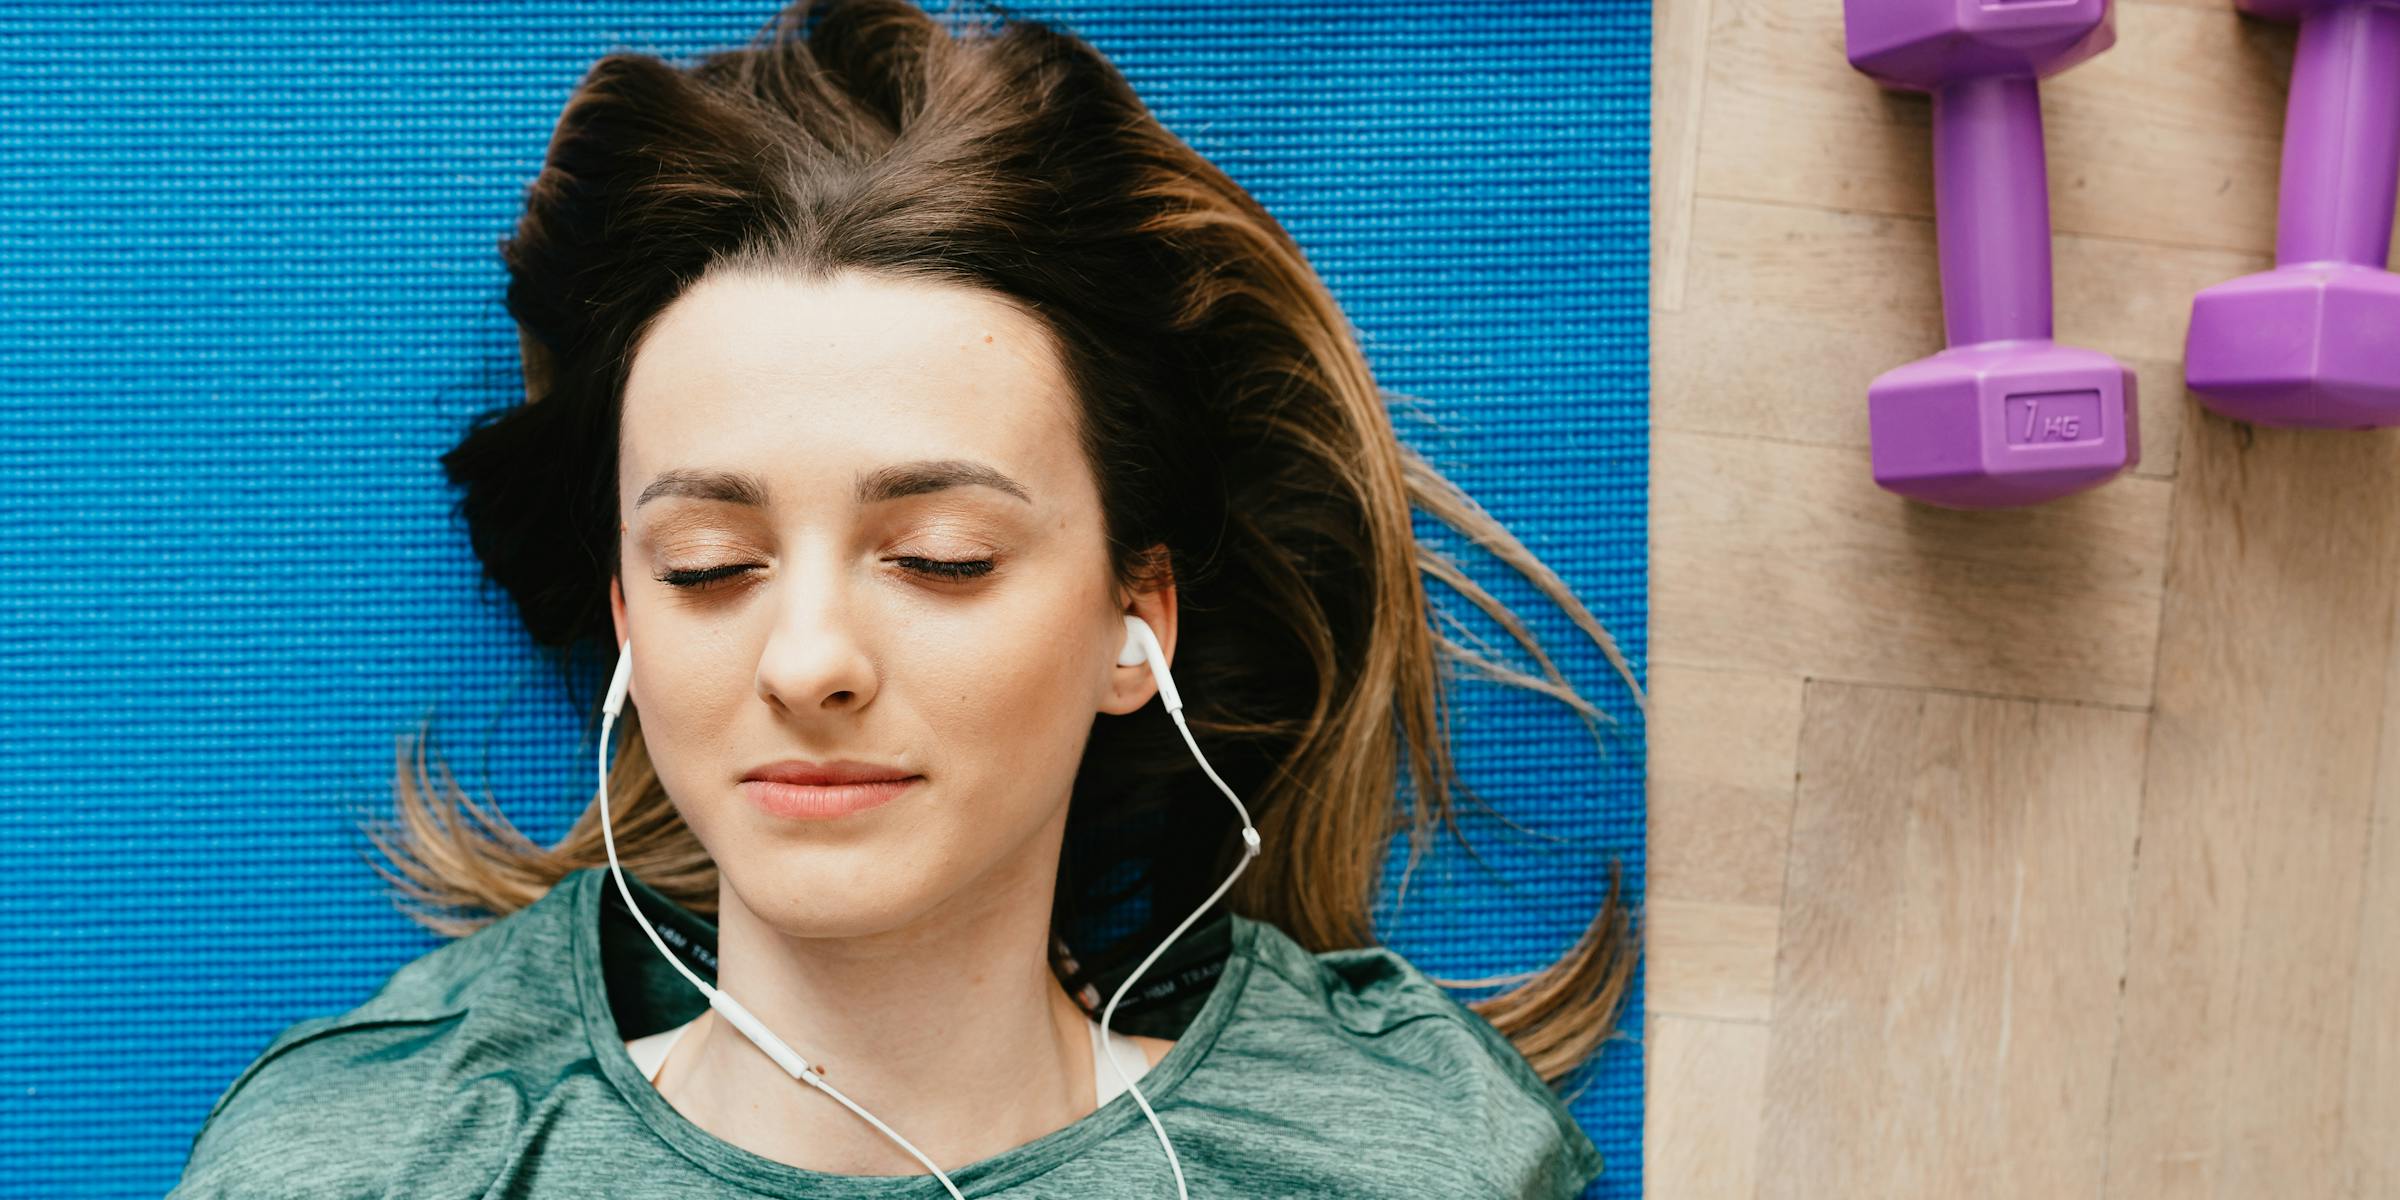 De invloed van muziek op je gezondheid? Muziek maakt je beter!